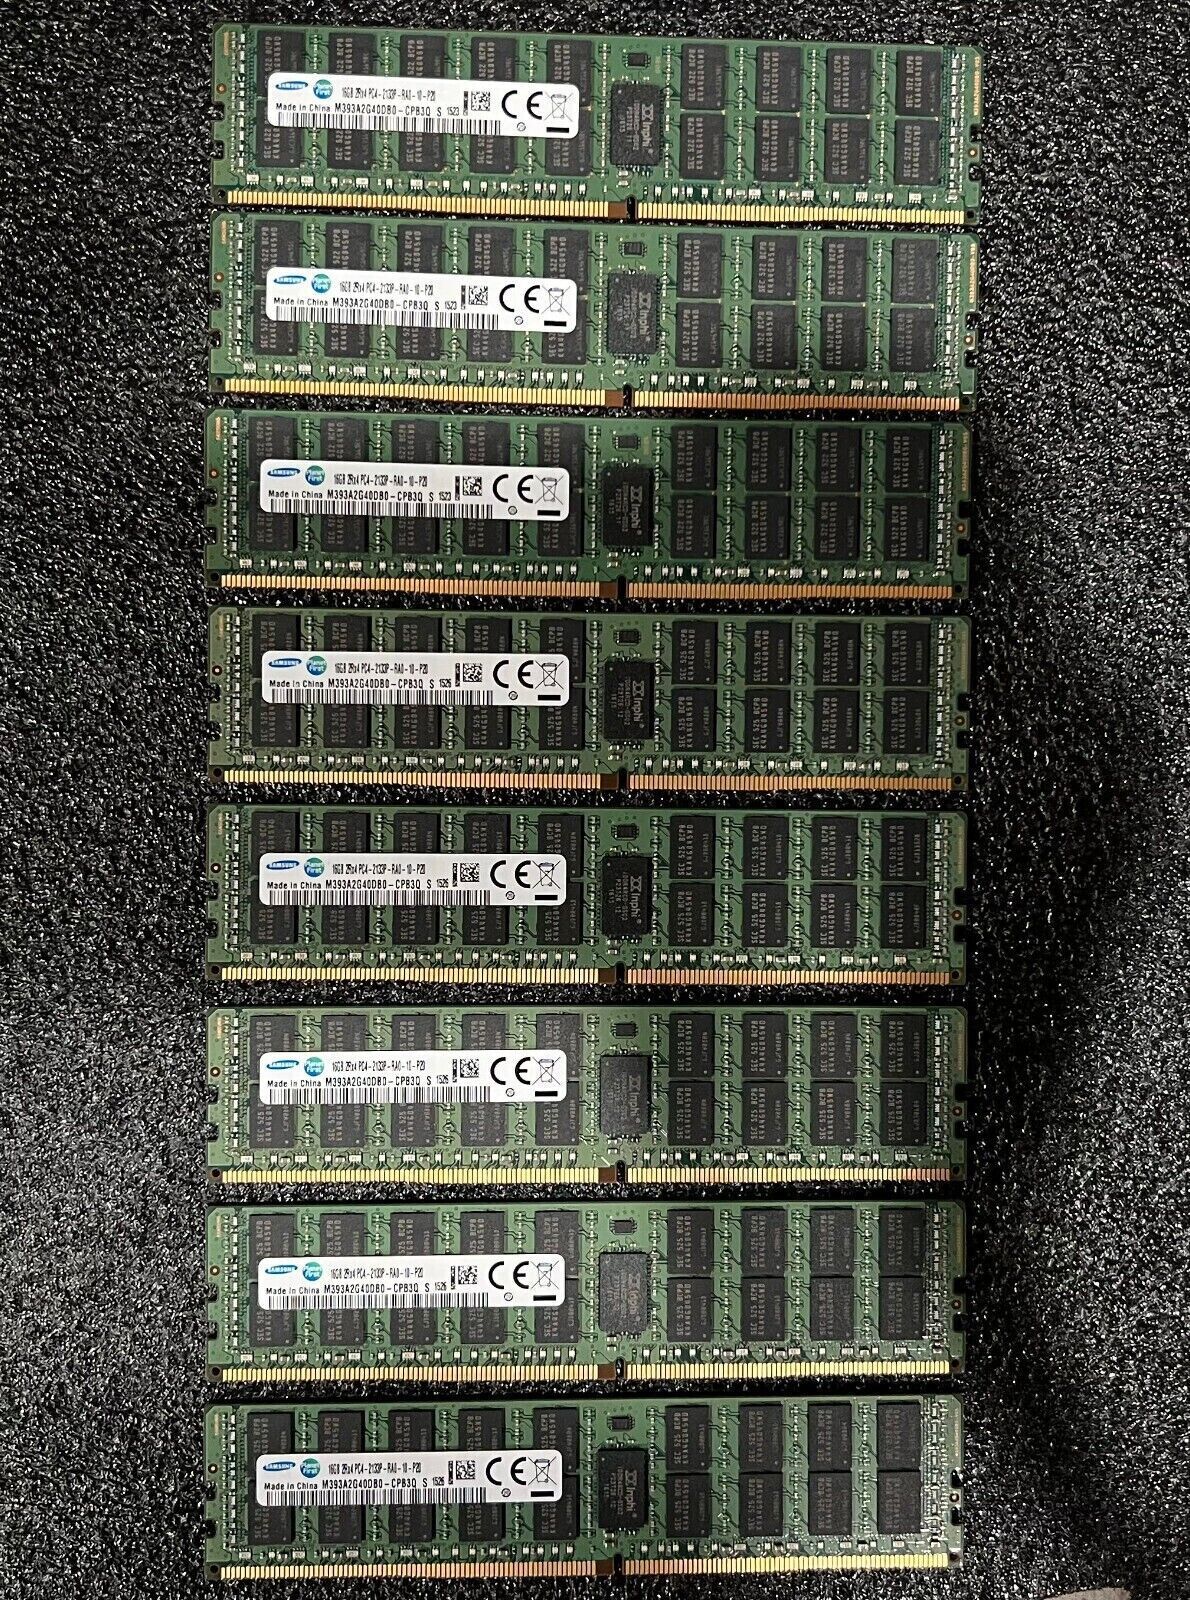 Primary image for Poweredge R430 R630 R730 R830 R930 128GB DDR4 Memory Kit (8 x 16GB)